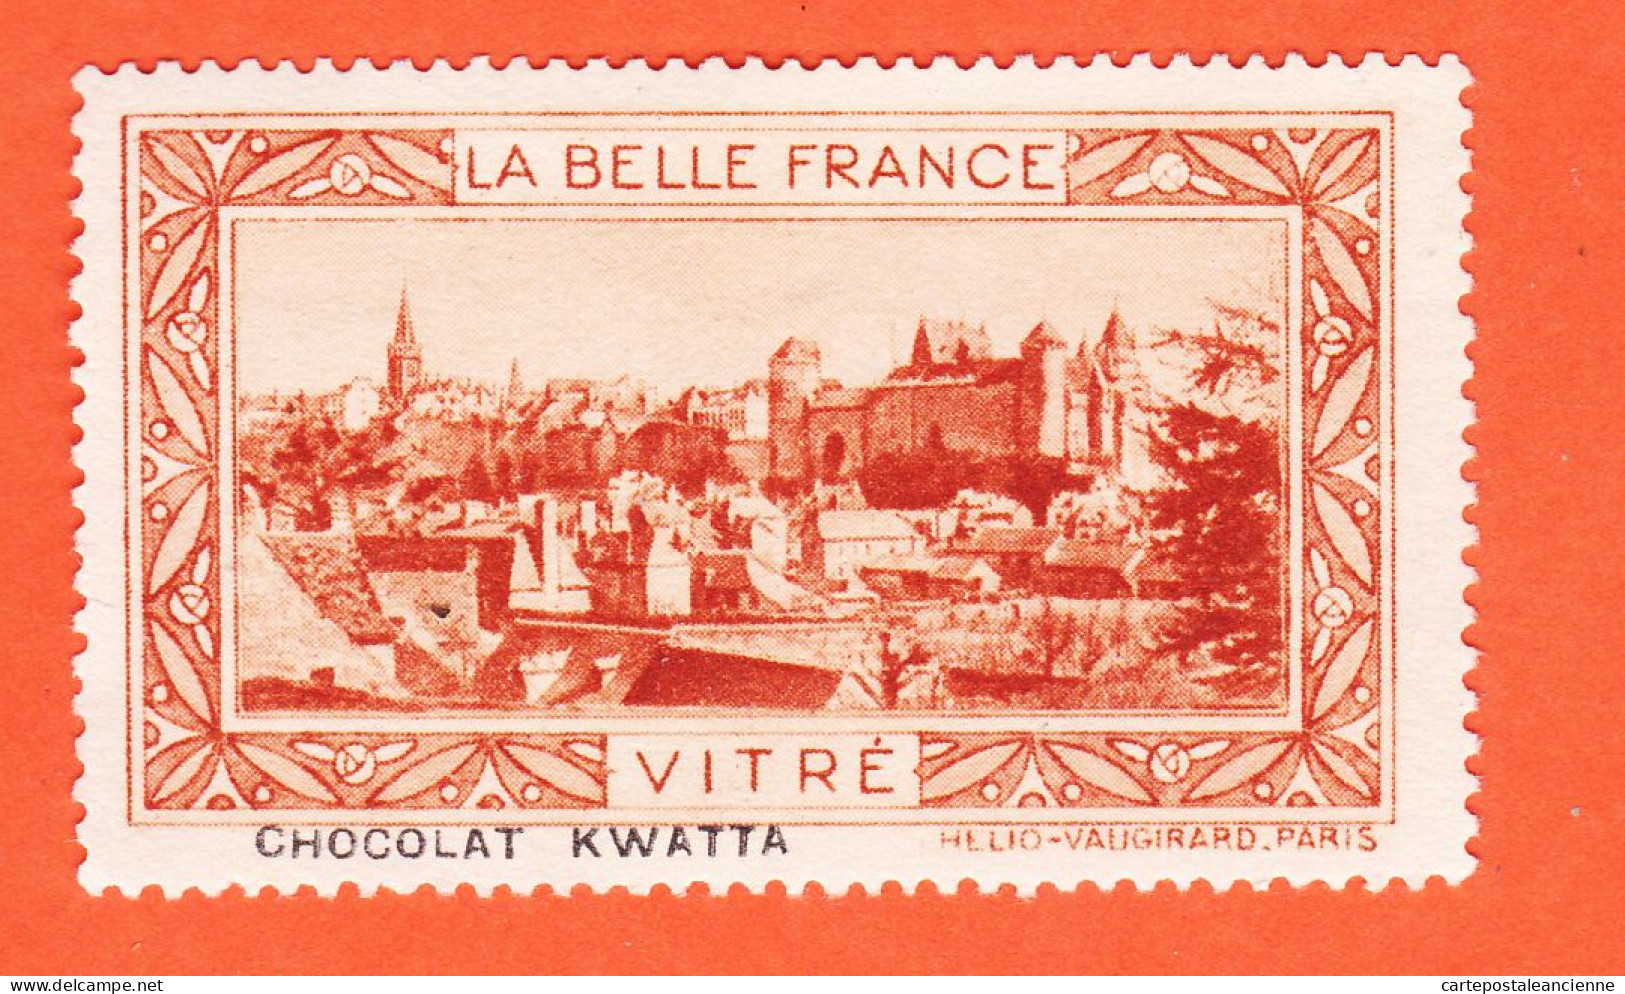 13000 / ⭐ ◉ VITRE (Orange) 35-Ille Vilaine Chateau Chocolat Pub KWATTA Vignette Collection BELLE FRANCE HELIO-VAUGIRARD - Tourism (Labels)